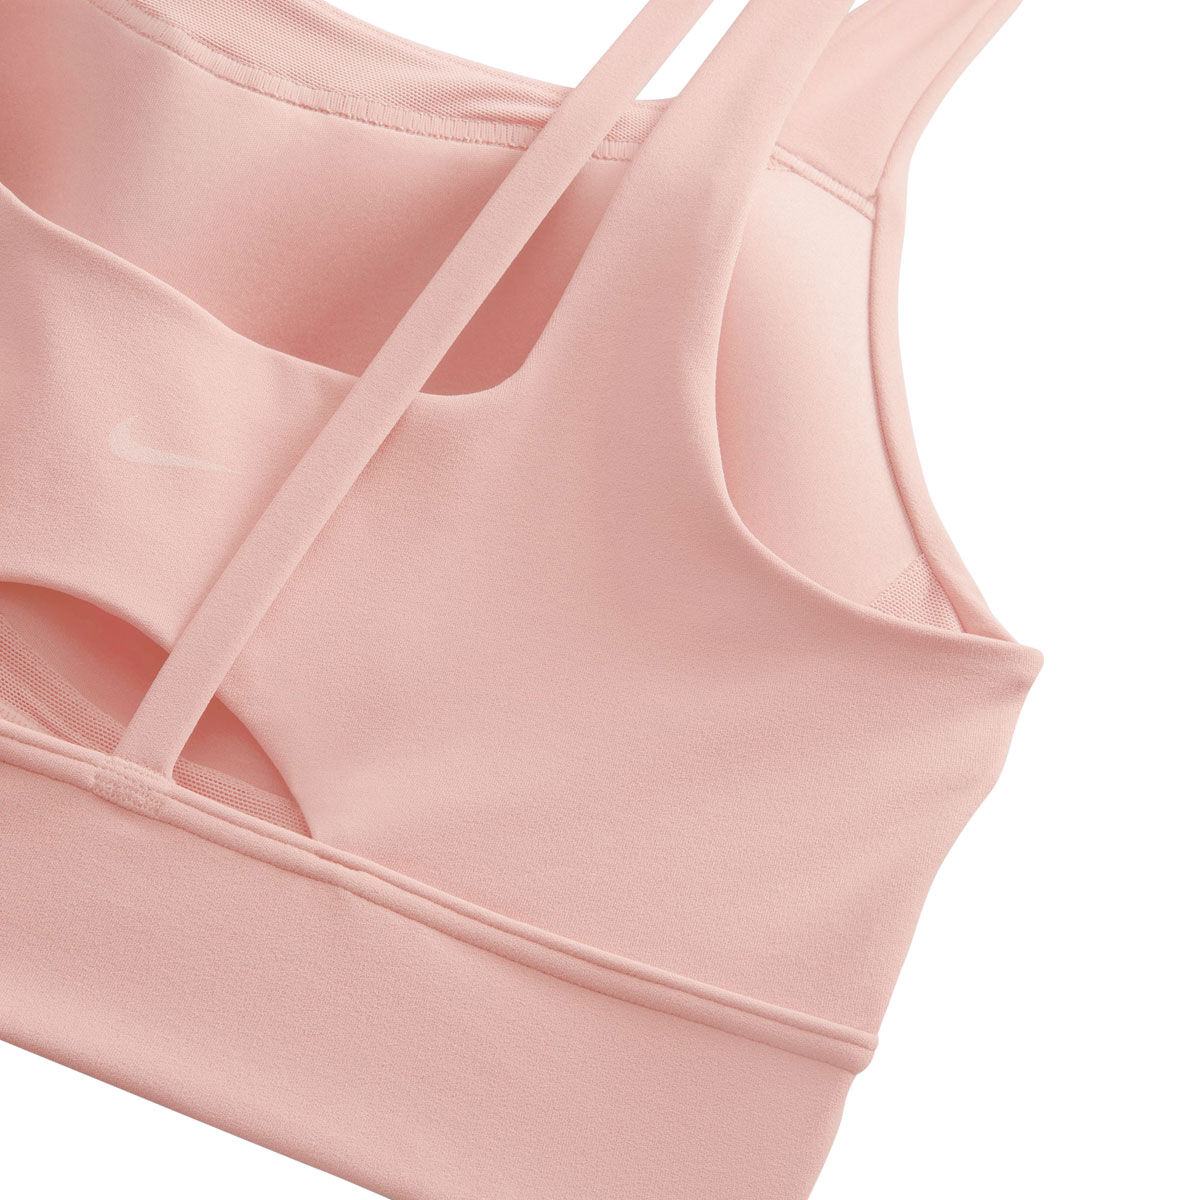 NWT Nike Women's Victory Compression Sports Bra Dri-FIT Swoosh Bright Pink  XS